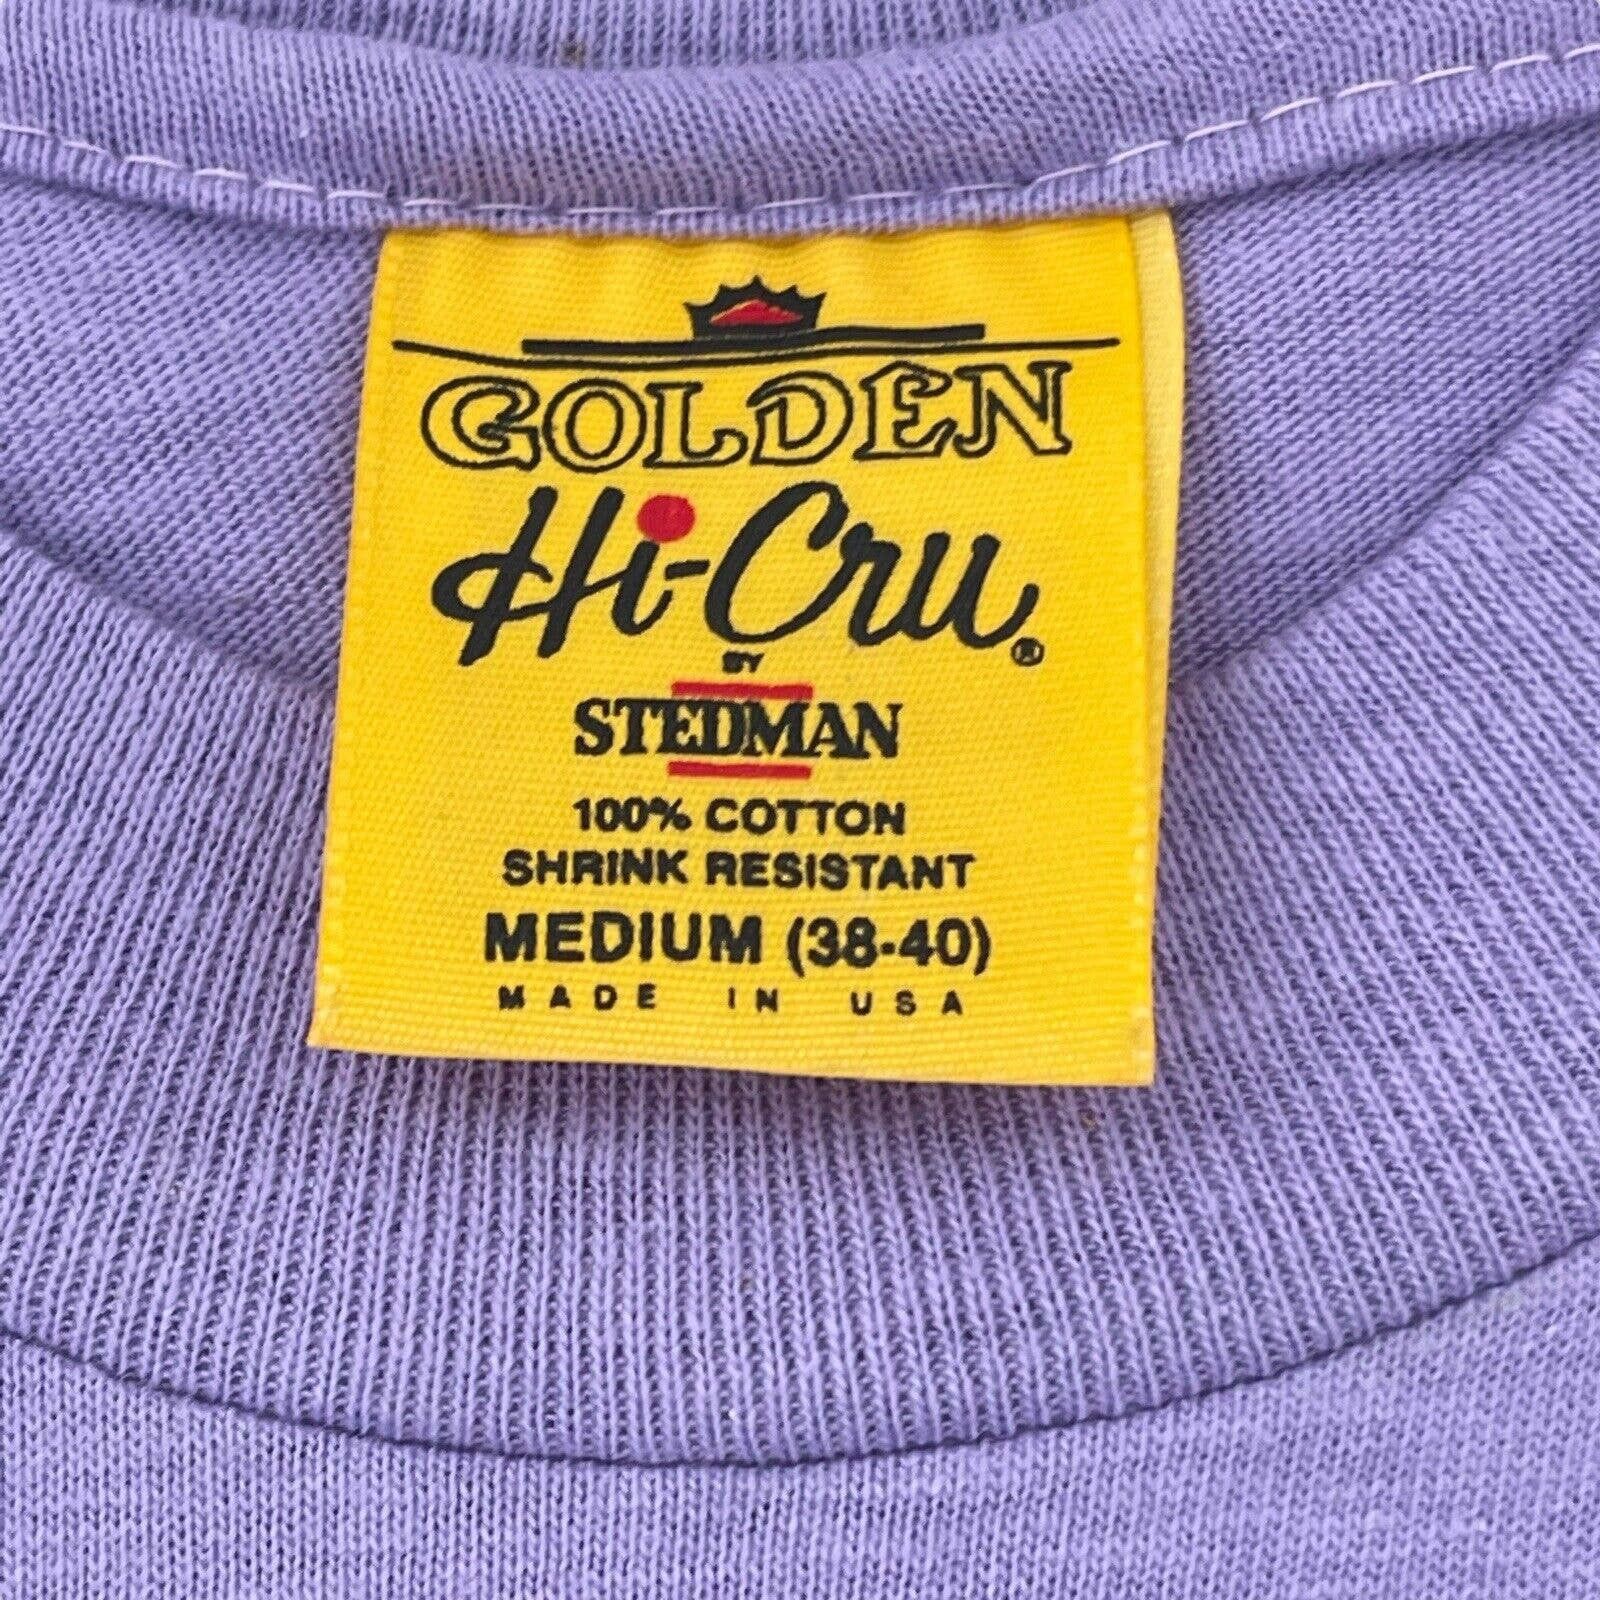 Vintage Vintage Hi-Cru By Stedman T-Shirt Virgen De Guadalupe Scream Size US M / EU 48-50 / 2 - 3 Thumbnail